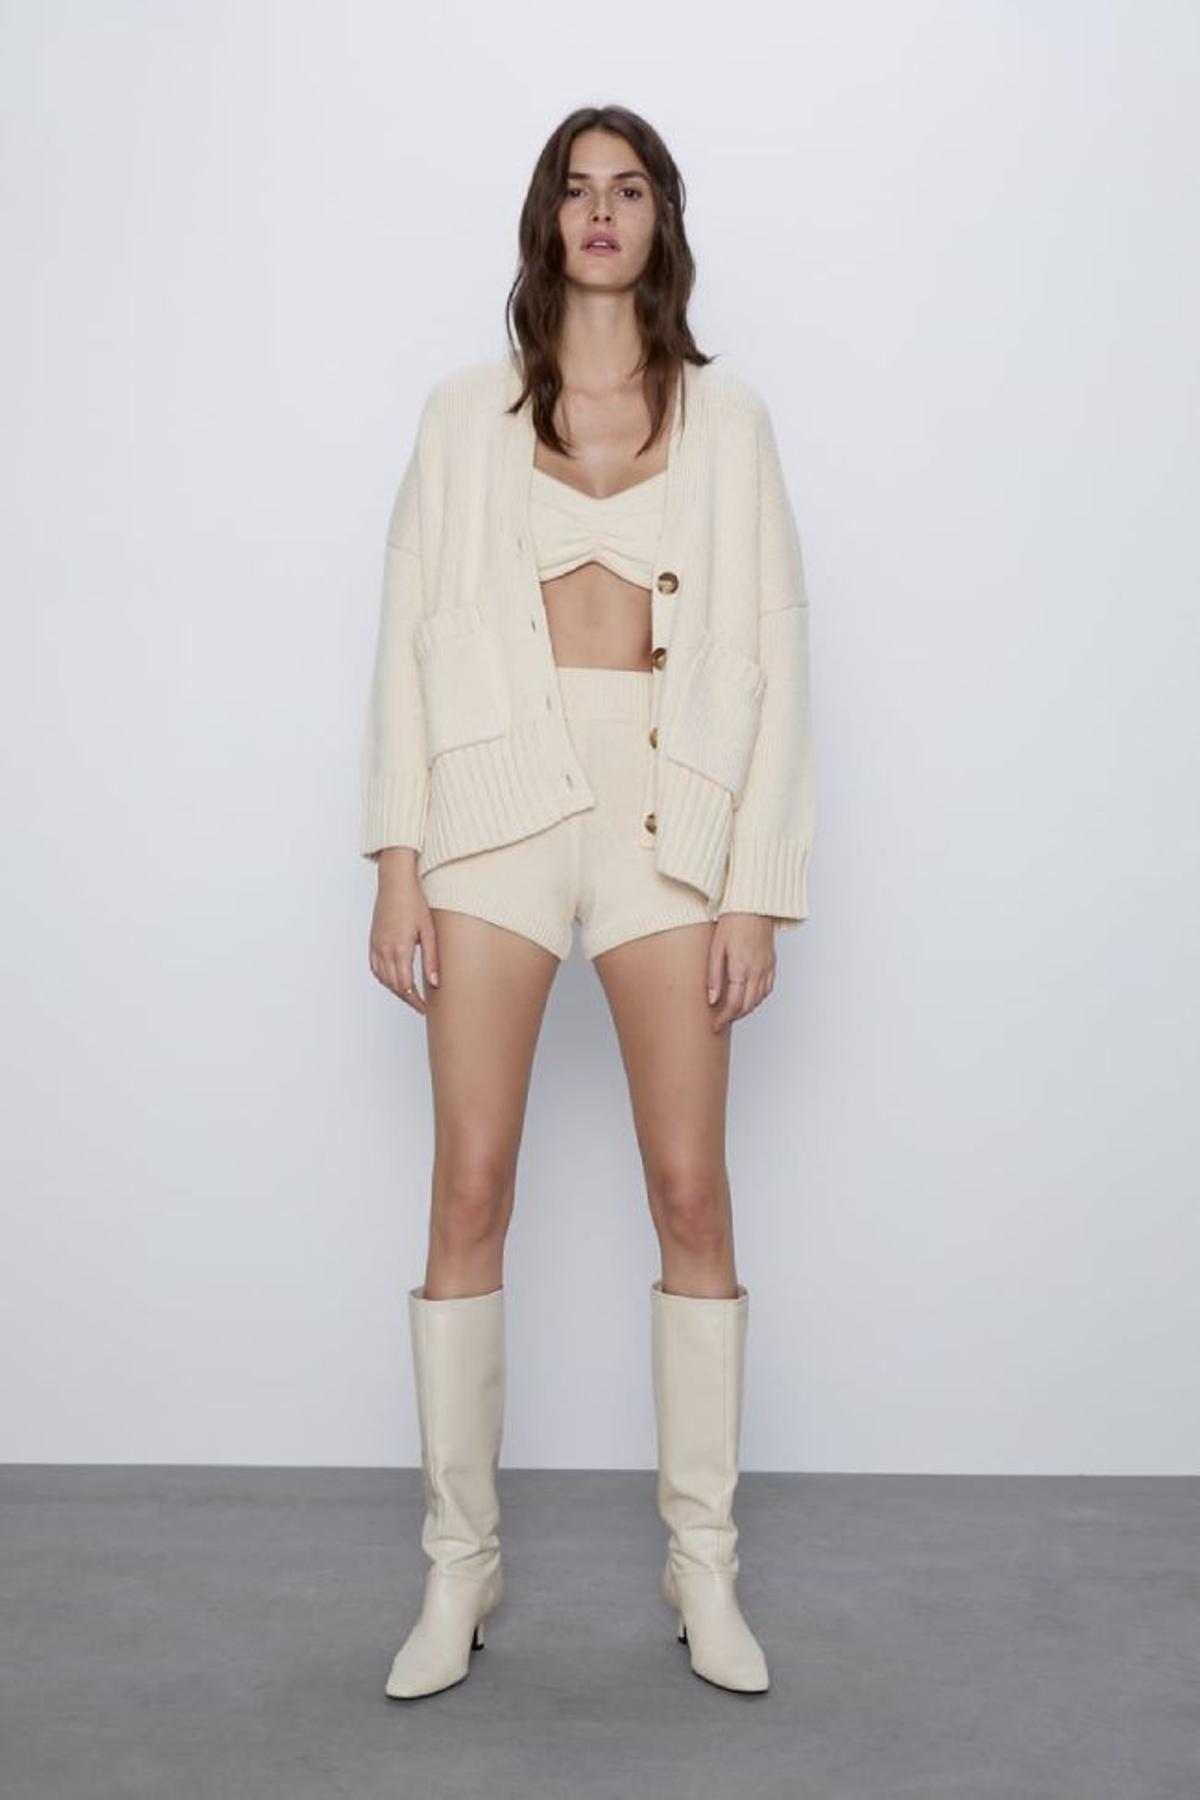 Shorts de punto 'confy-chic' para la cuarentena: la opción que brilla en Instagram y que ya vende Zara